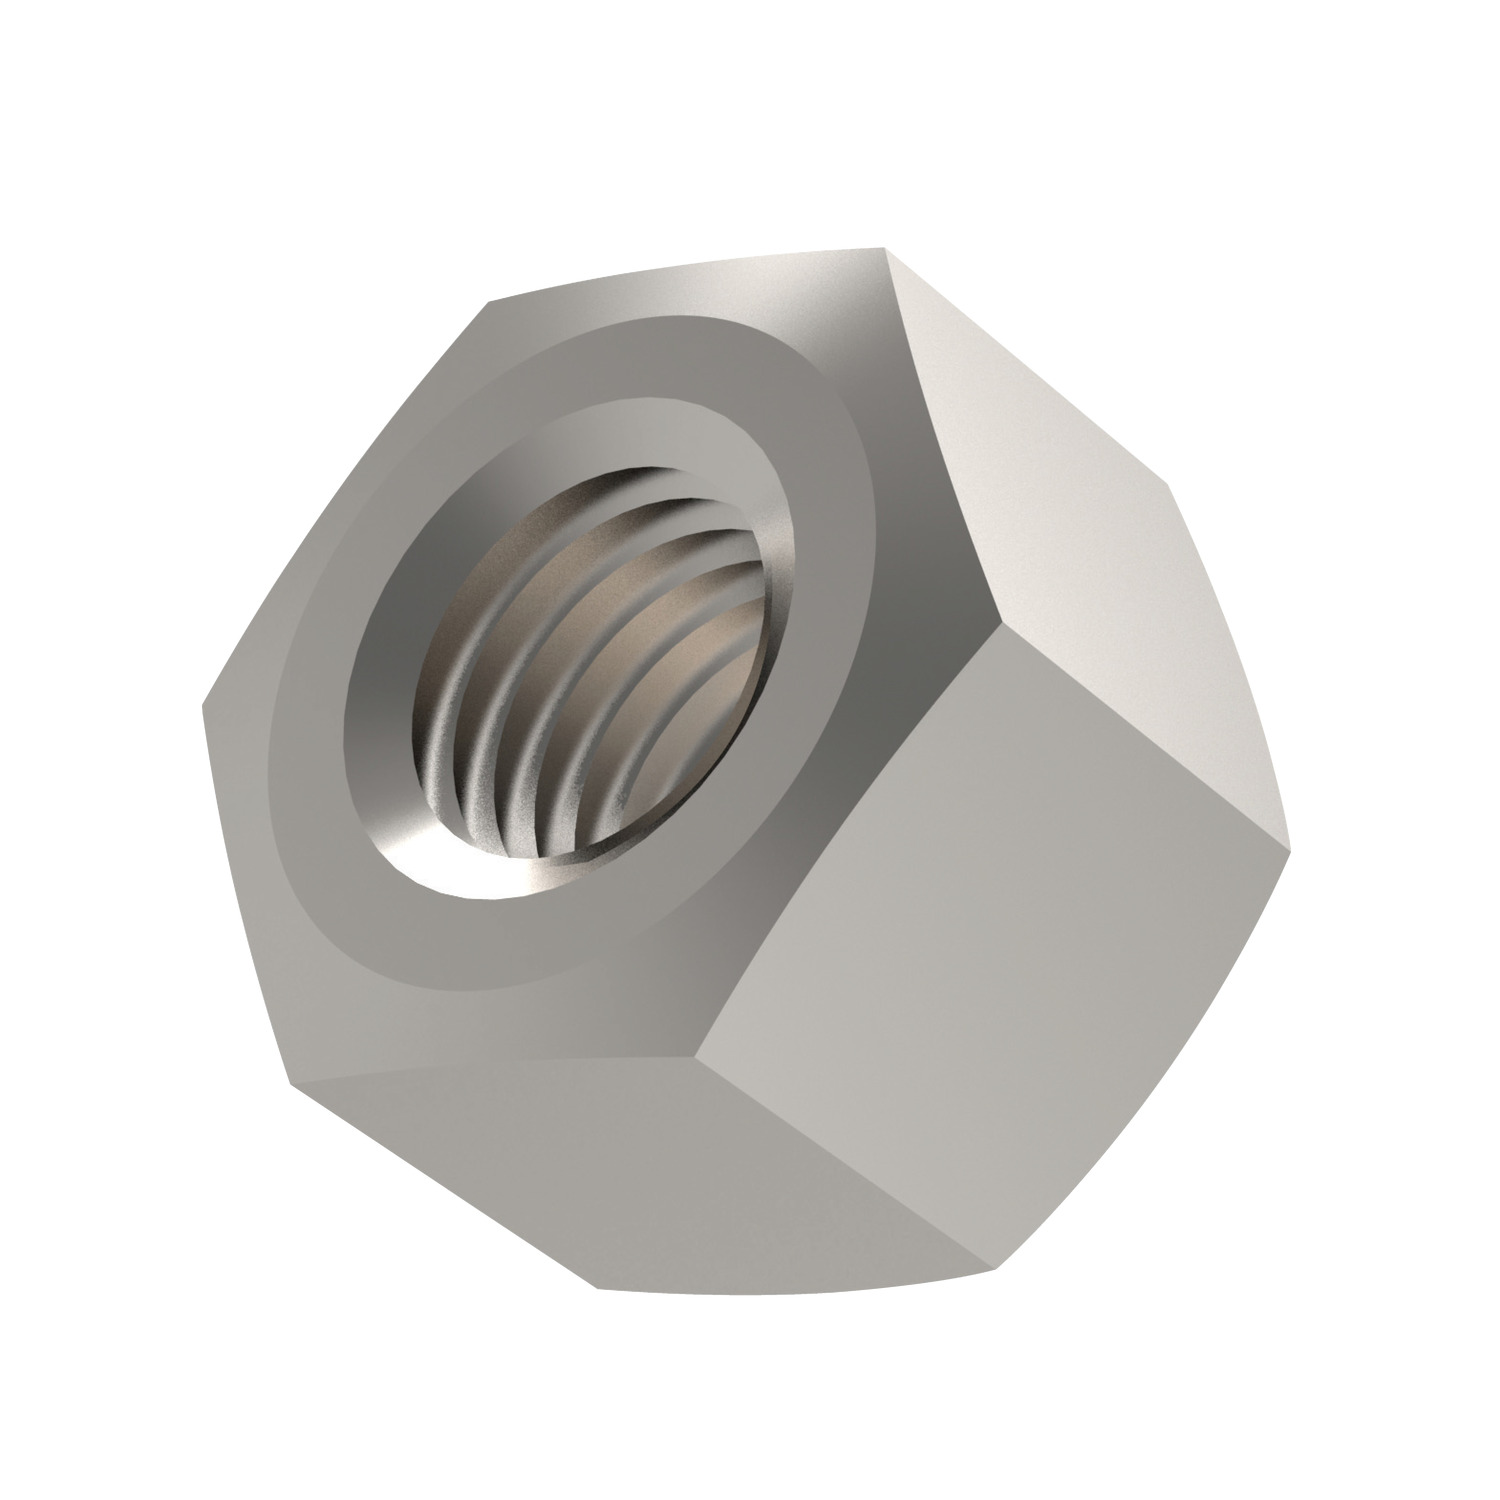 P0317.A2 - Hexagon Cap Nuts